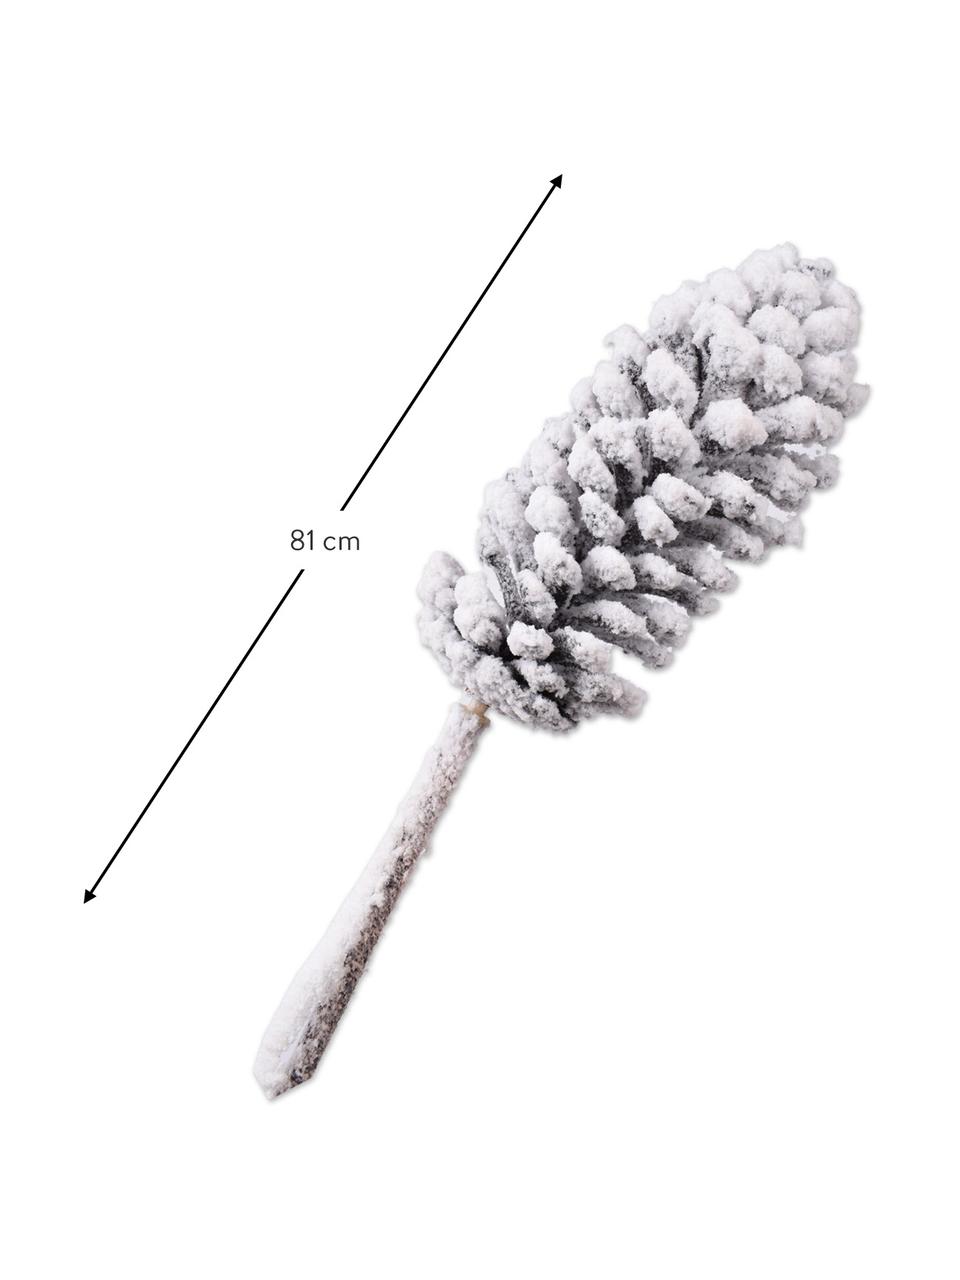 Ramo di pino artificiale con neve artificiale 2 pz, Materiale sintetico, filo metallico, Bianco, Lung. 81 cm